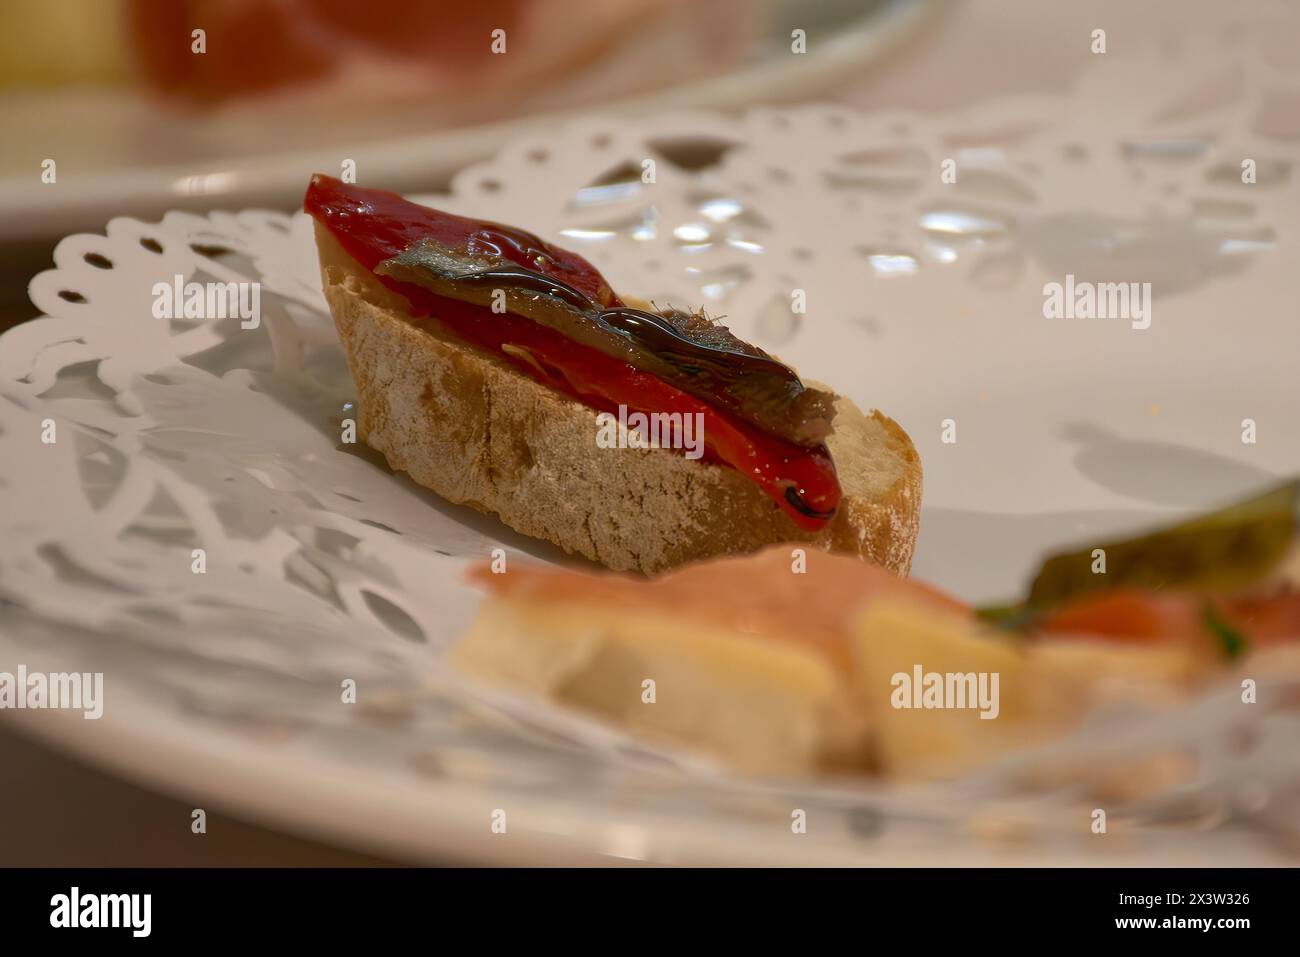 Un toast de pain, recouvert d'anchois et de poivre rôti. Un plat méditerranéen Banque D'Images